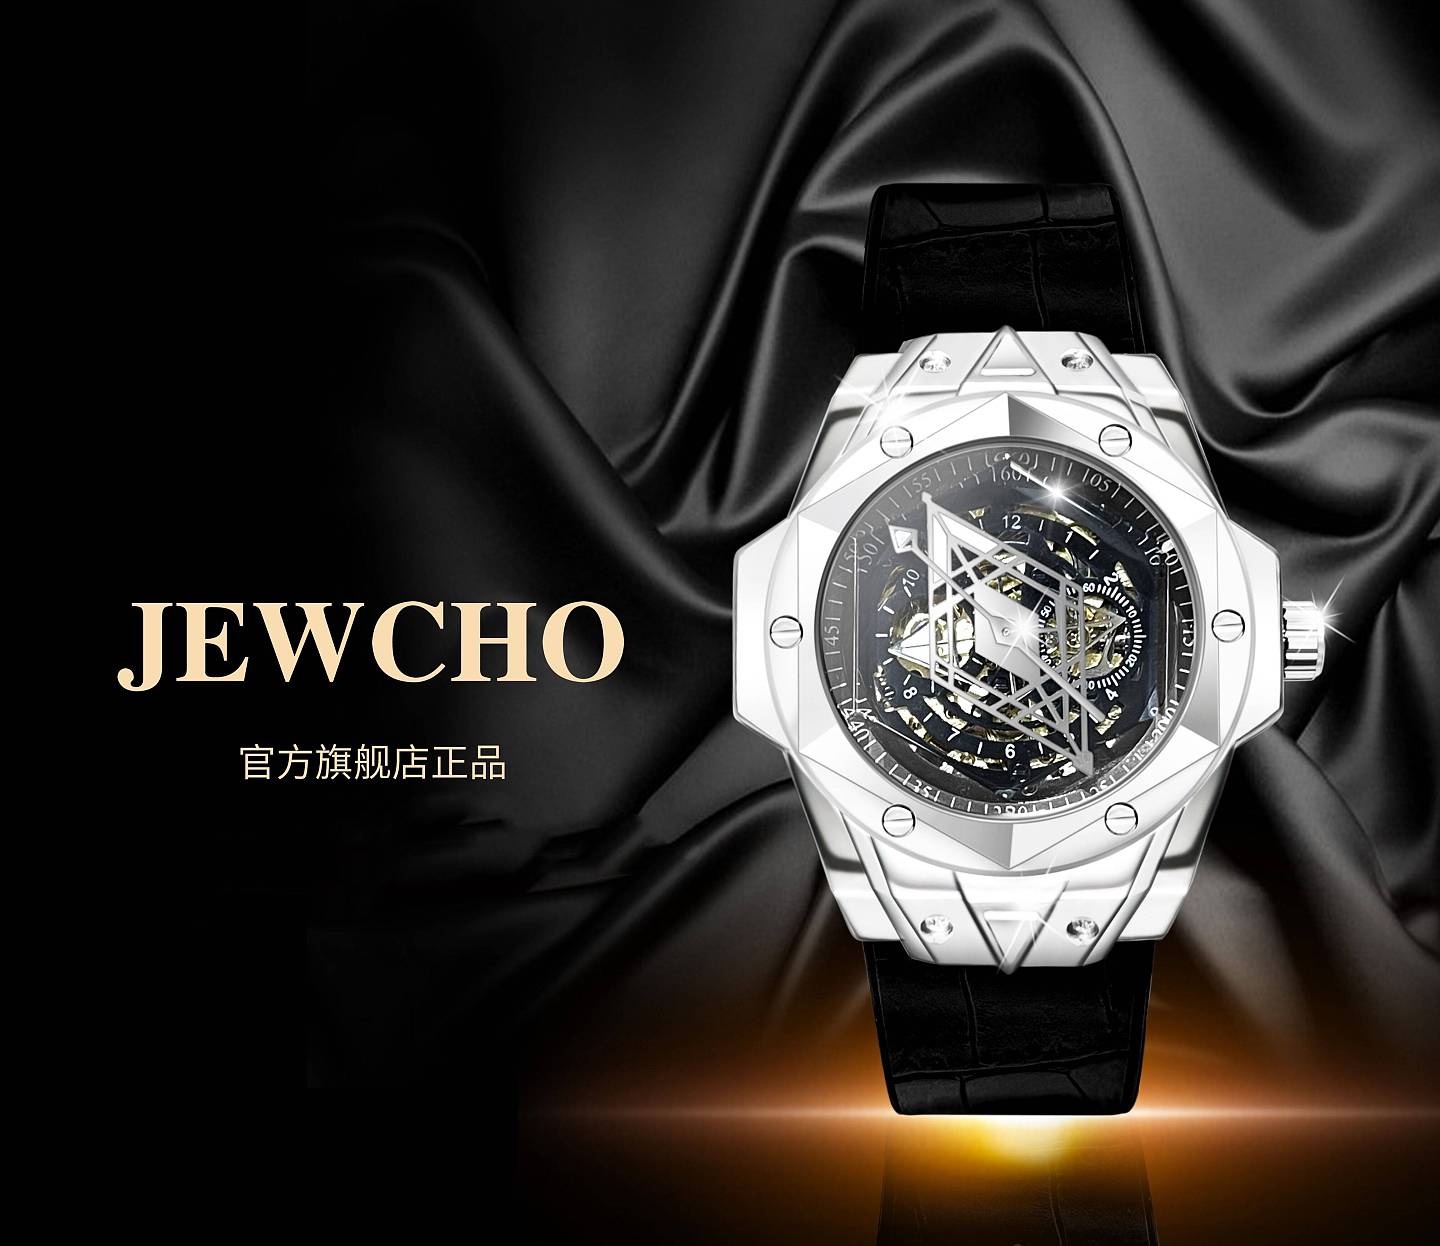 JEWCHO品牌、追求卓越不断创新的品牌特质 - 2